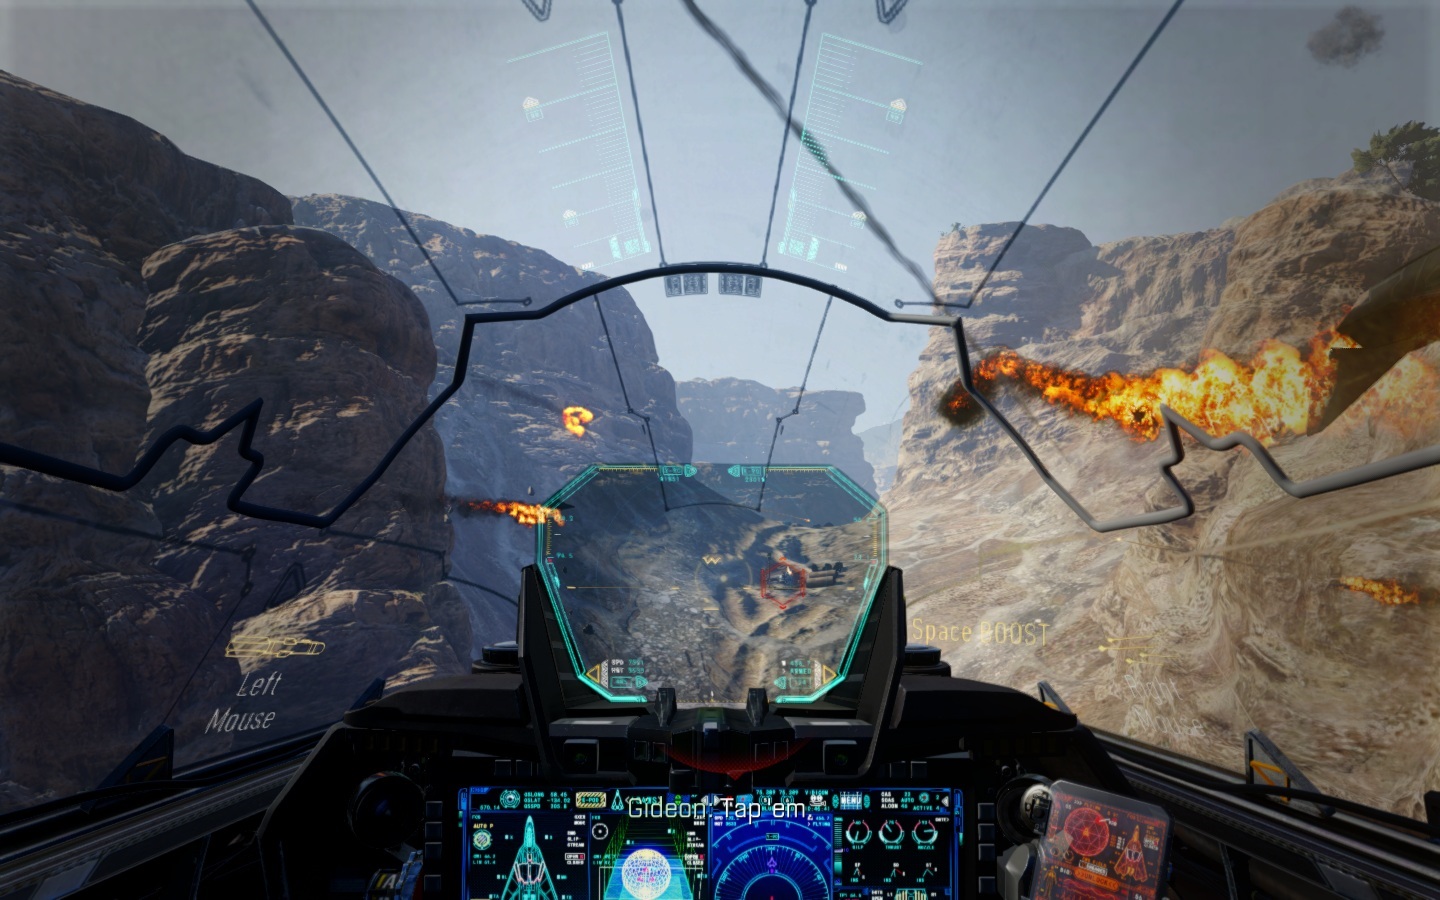 Call of Duty: Advanced Warfare Poas hry sa zhostte niekokch vozidiel, od lode, cez tank a po lietadlo. Neakajte, iadne realistick ovldanie.